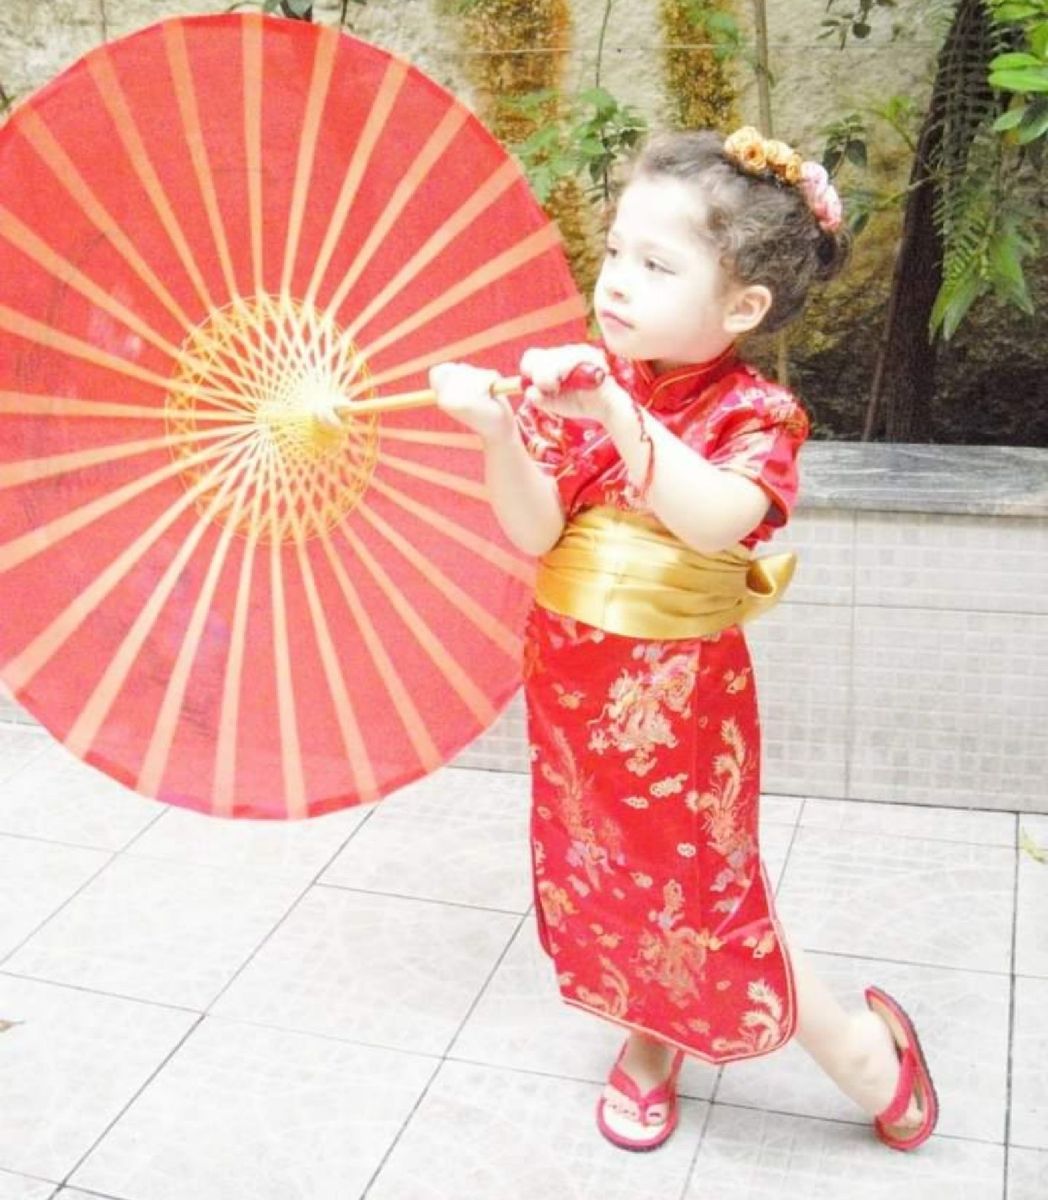 kimono gueixa infantil